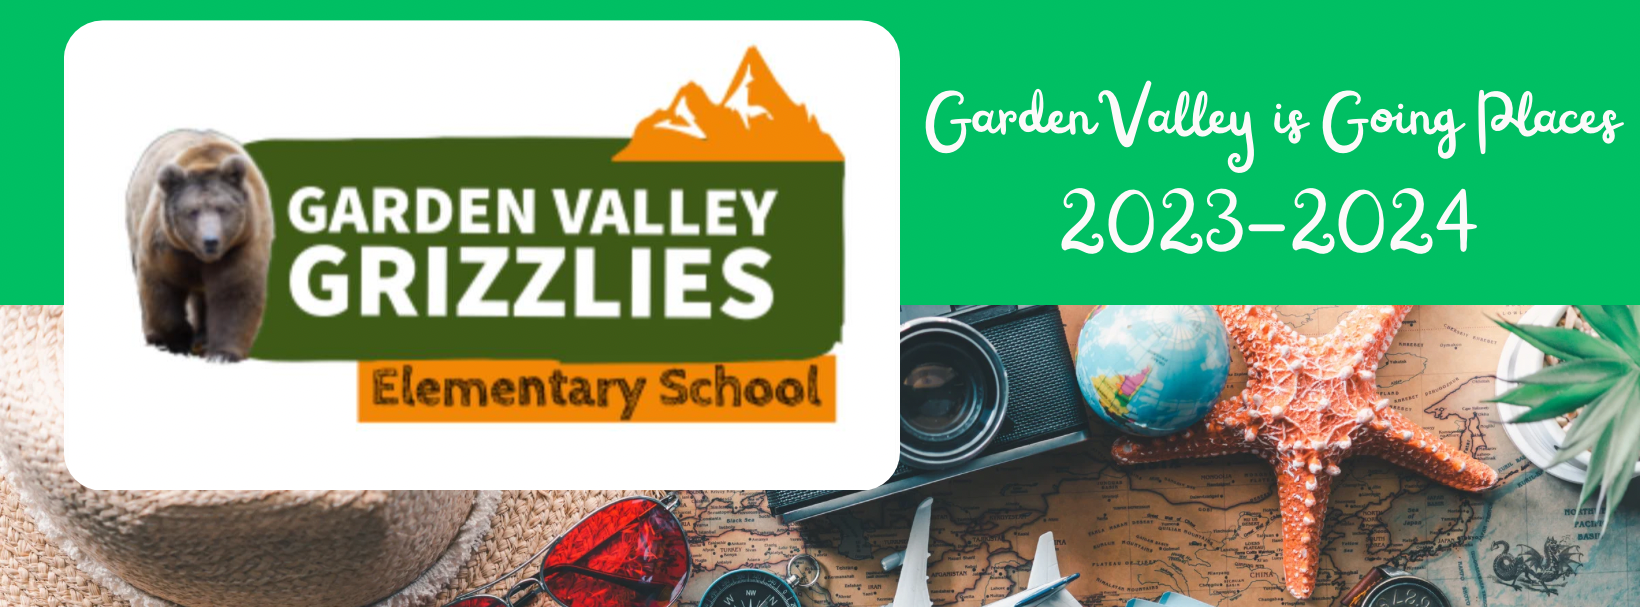 garden valley grizzlies elementary school